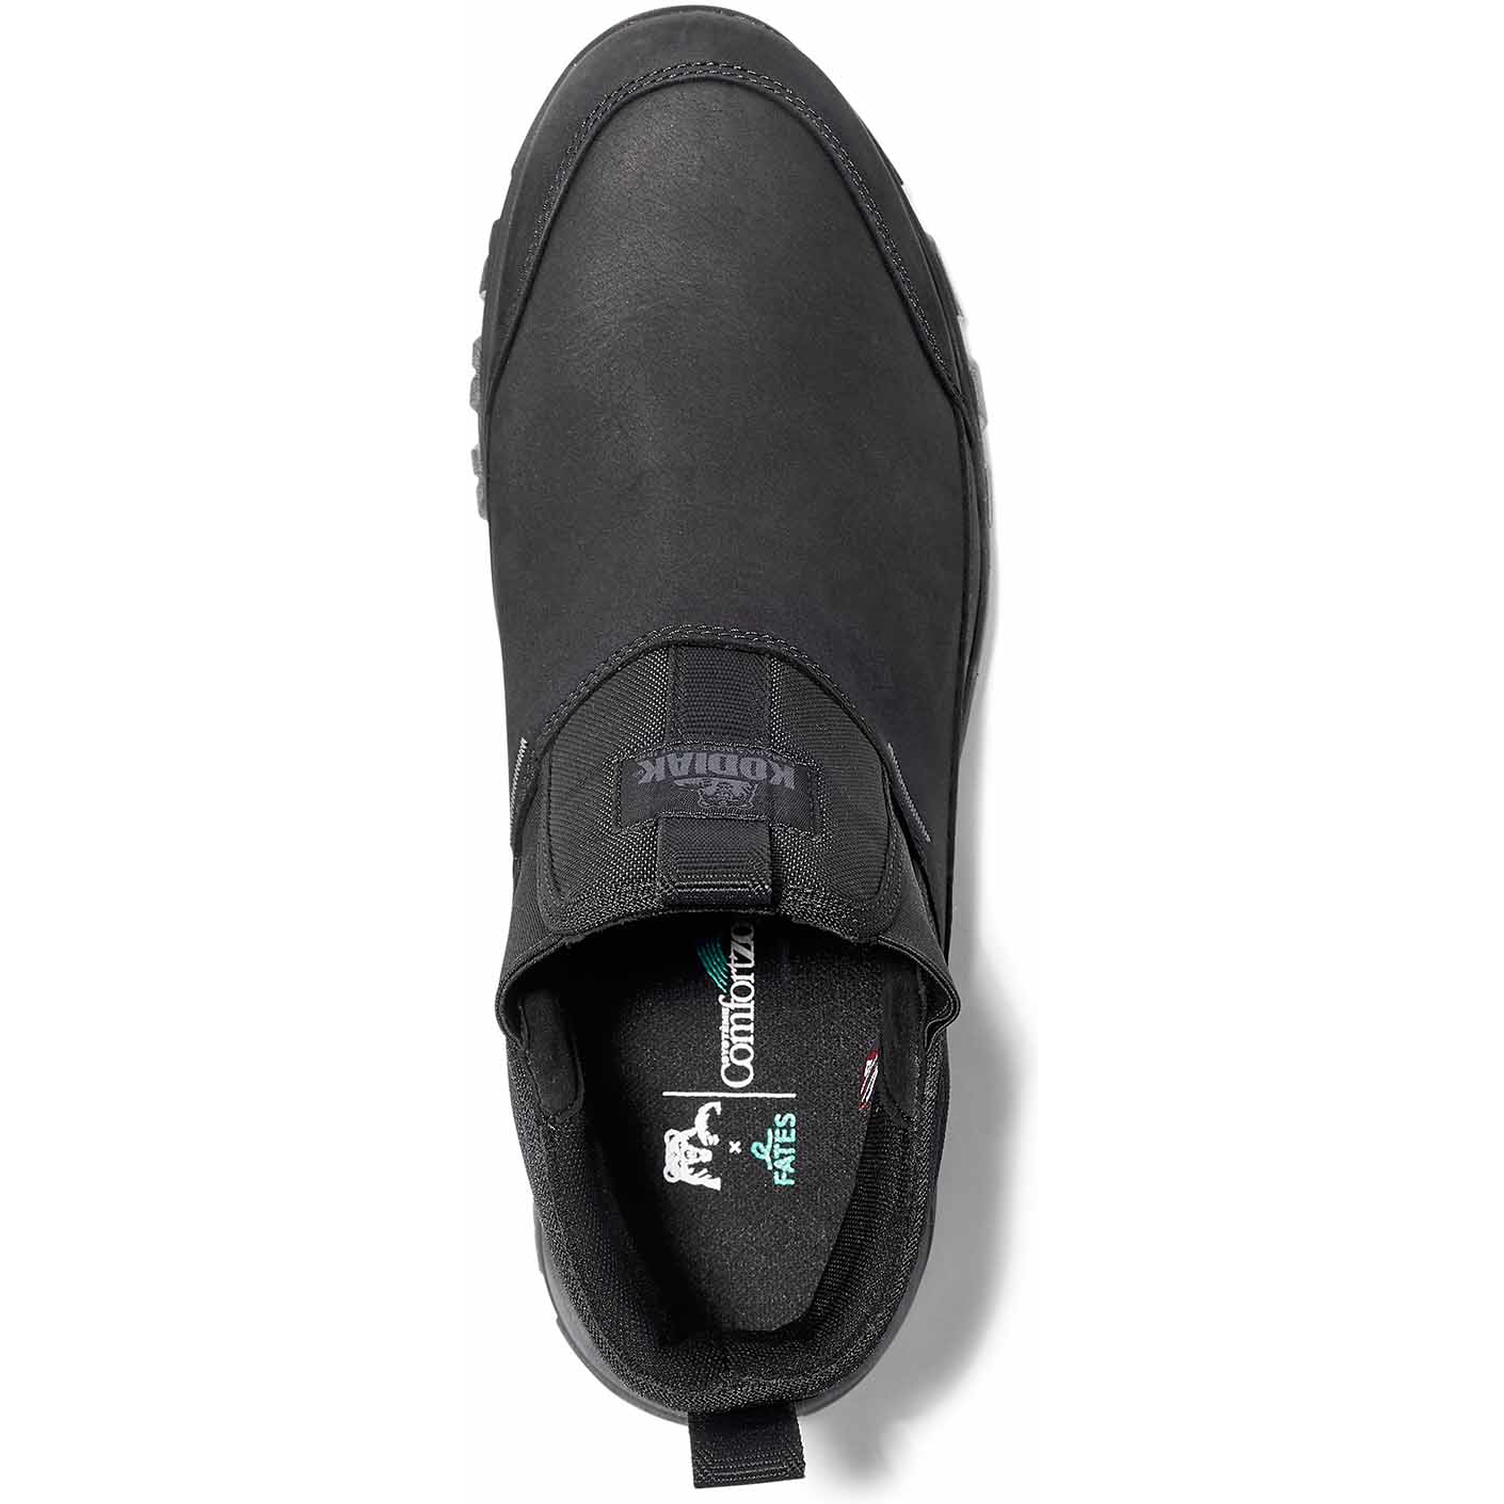 Kodiak Men's Tarbot Soft Toe WP Slip On Work Boot -Black- 4TE3BK  - Overlook Boots